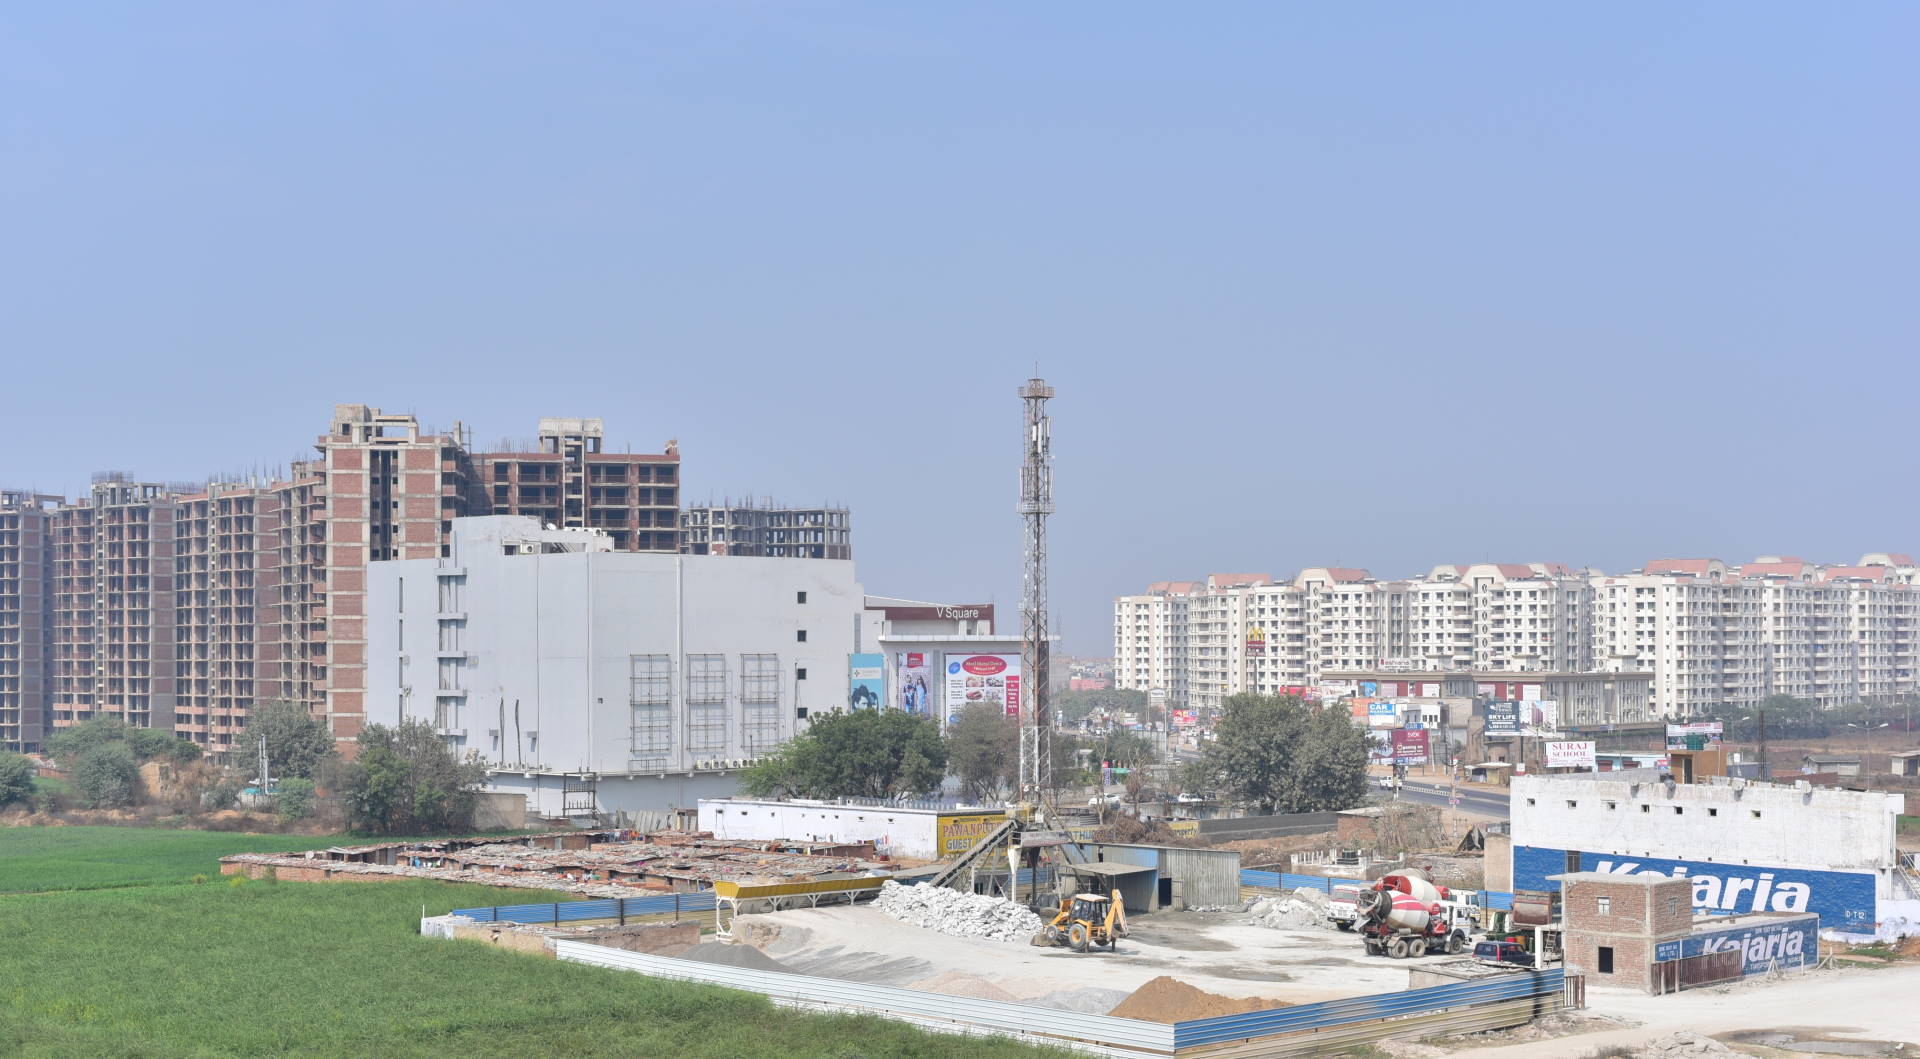 Bienvenidos a Bhiwadi, la ciudad con el aire más contaminado del mundo